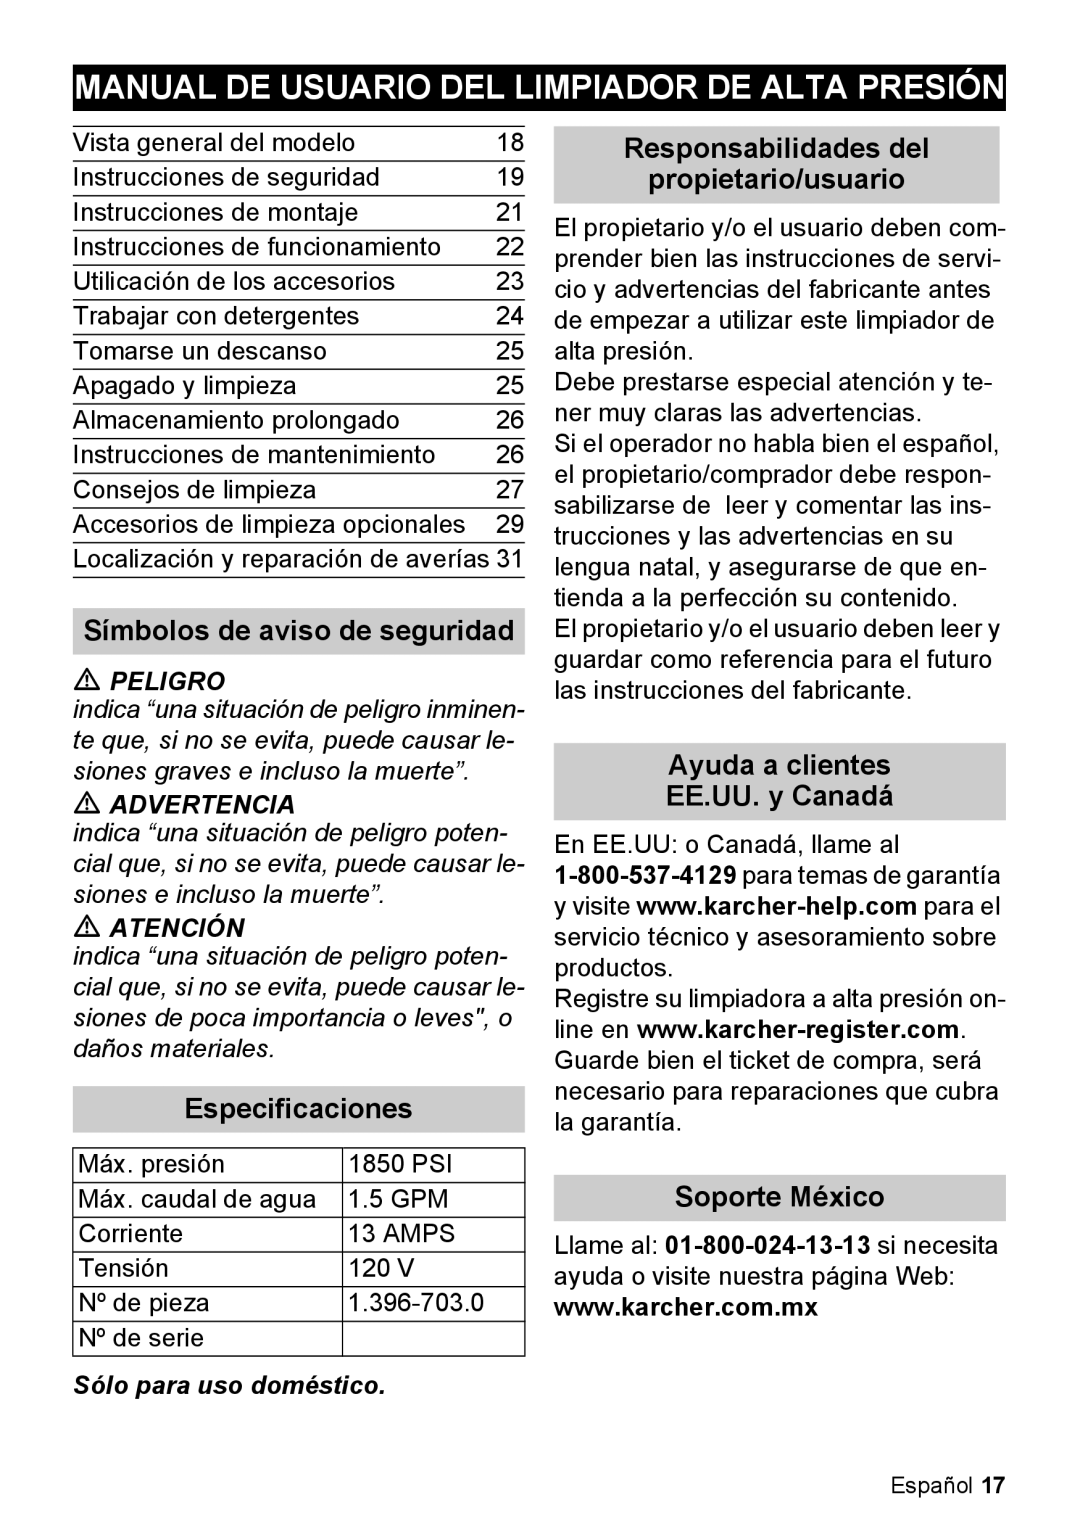 Karcher K 5.85 M manual Manual De Usuario Del Limpiador De Alta Presión, Símbolos de aviso de seguridad, Especificaciones 